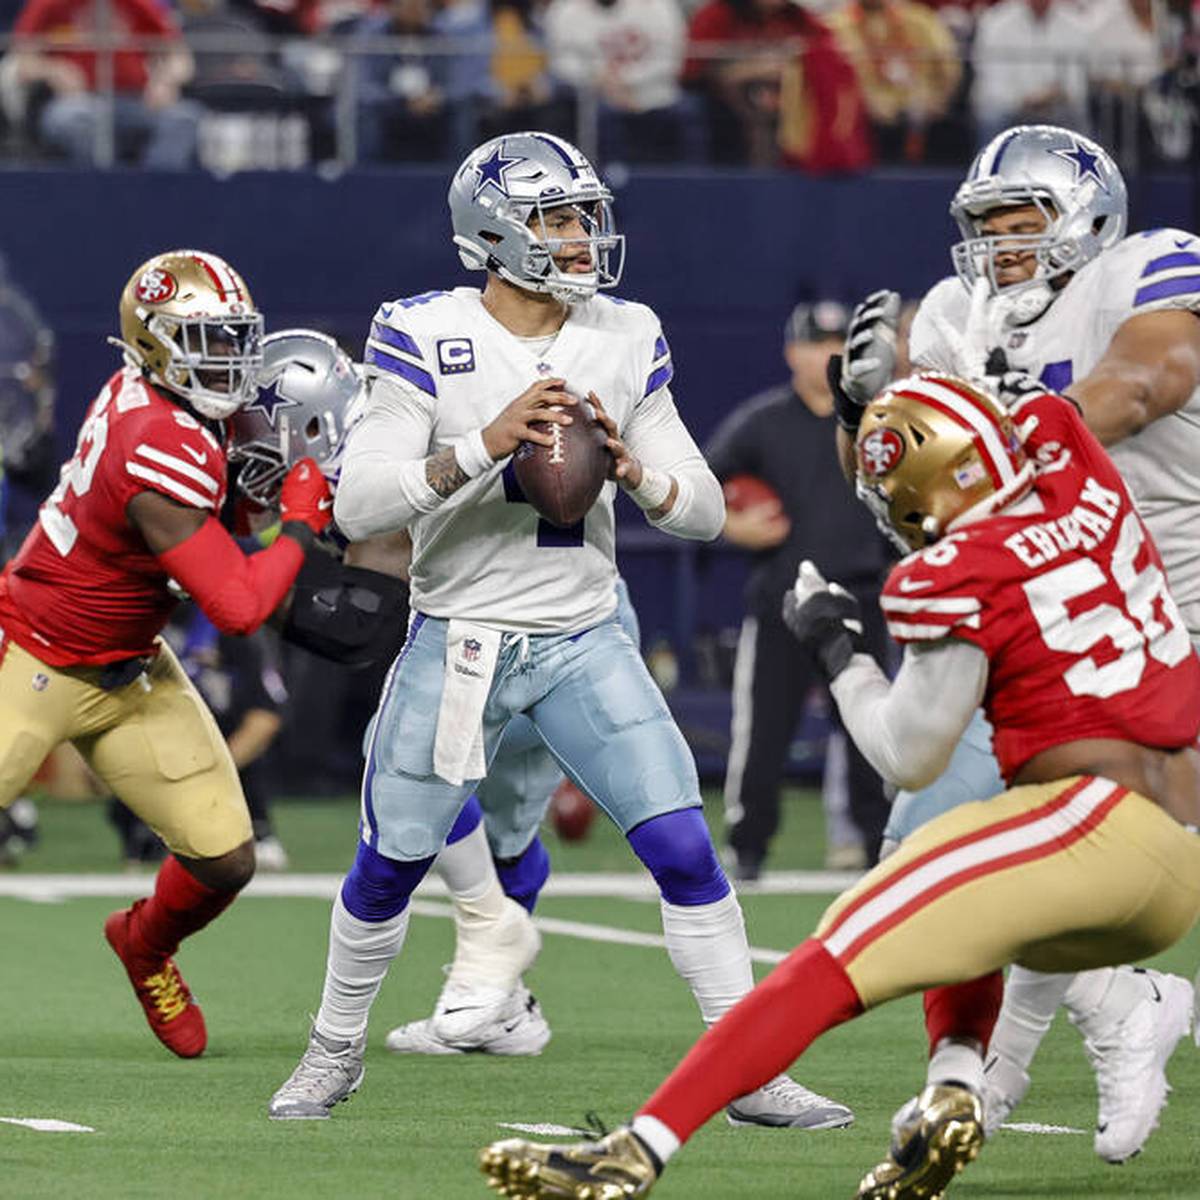 Die favorisierten Dallas Cowboys kassieren in den NFL-Playoffs gegen die San Francisco 49ers eine bittere Pleite. Eine kuriose Panne zum Ende des Spiels besiegelt das Playoff-Aus.